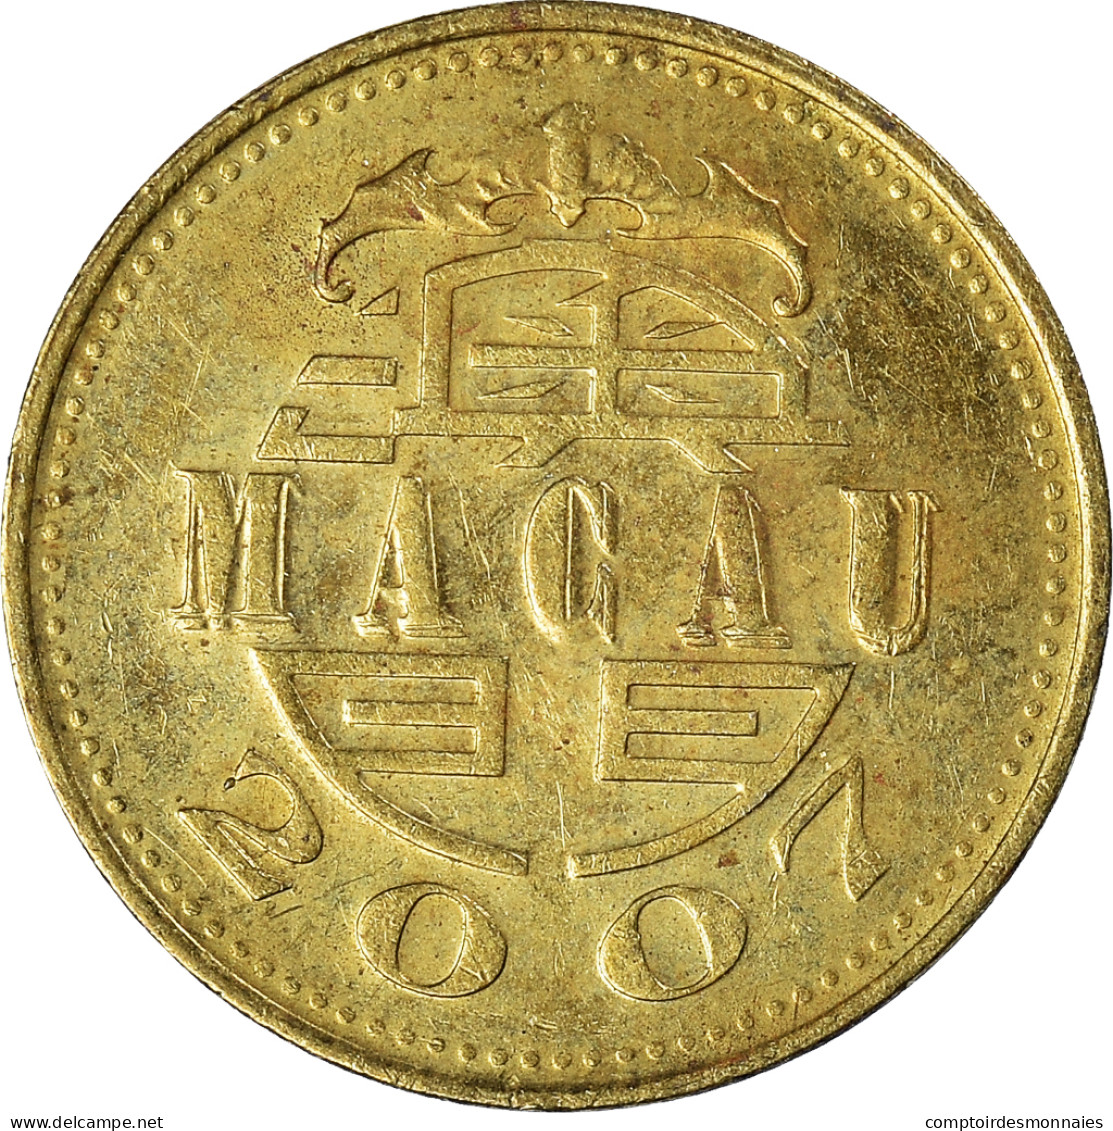 Monnaie, Macao, 10 Avos, 2007 - Macau